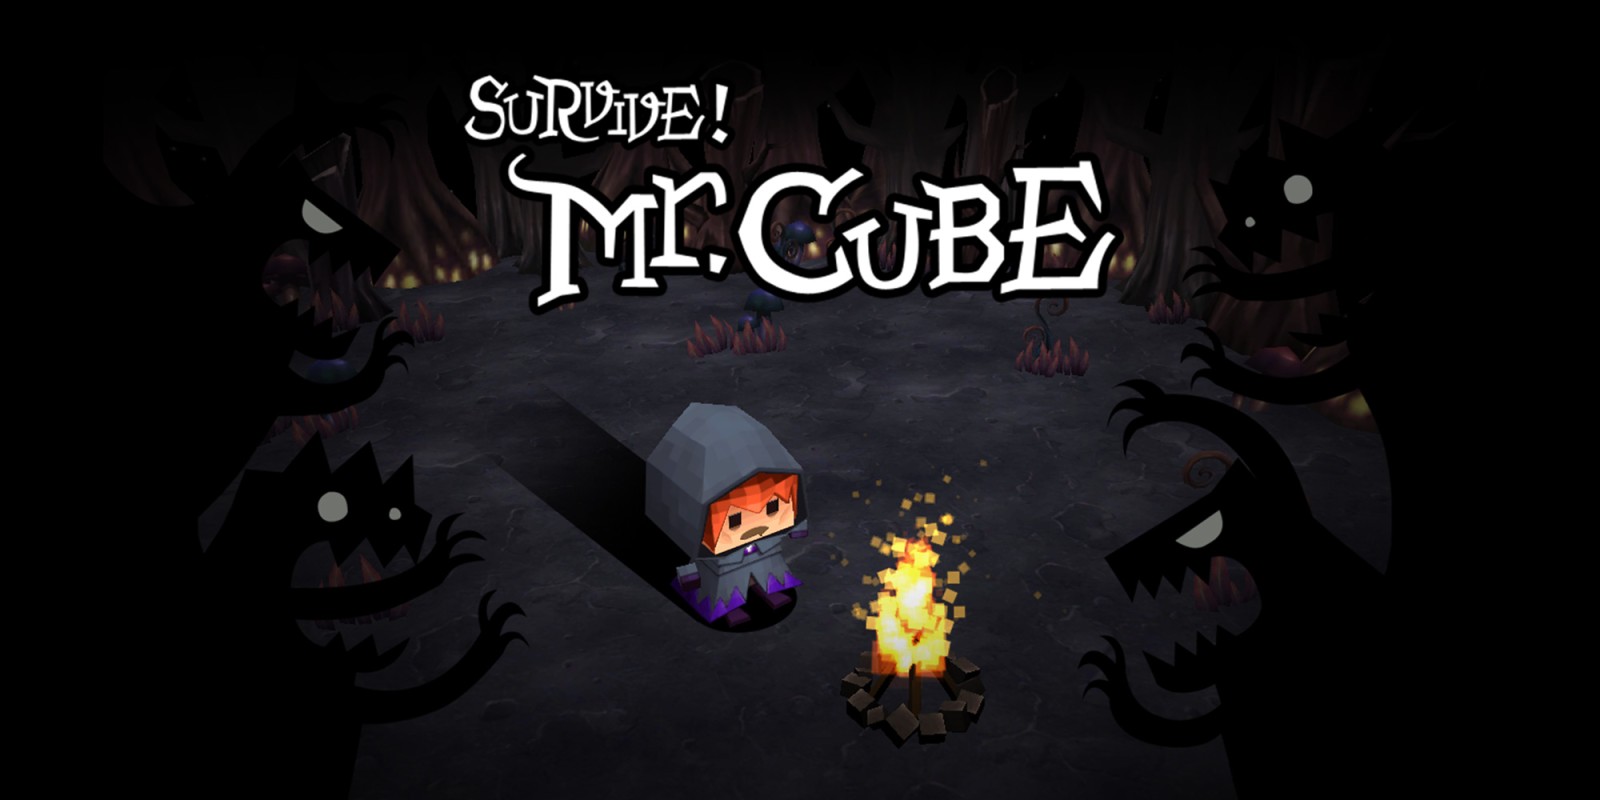 Survive! MR.CUBE